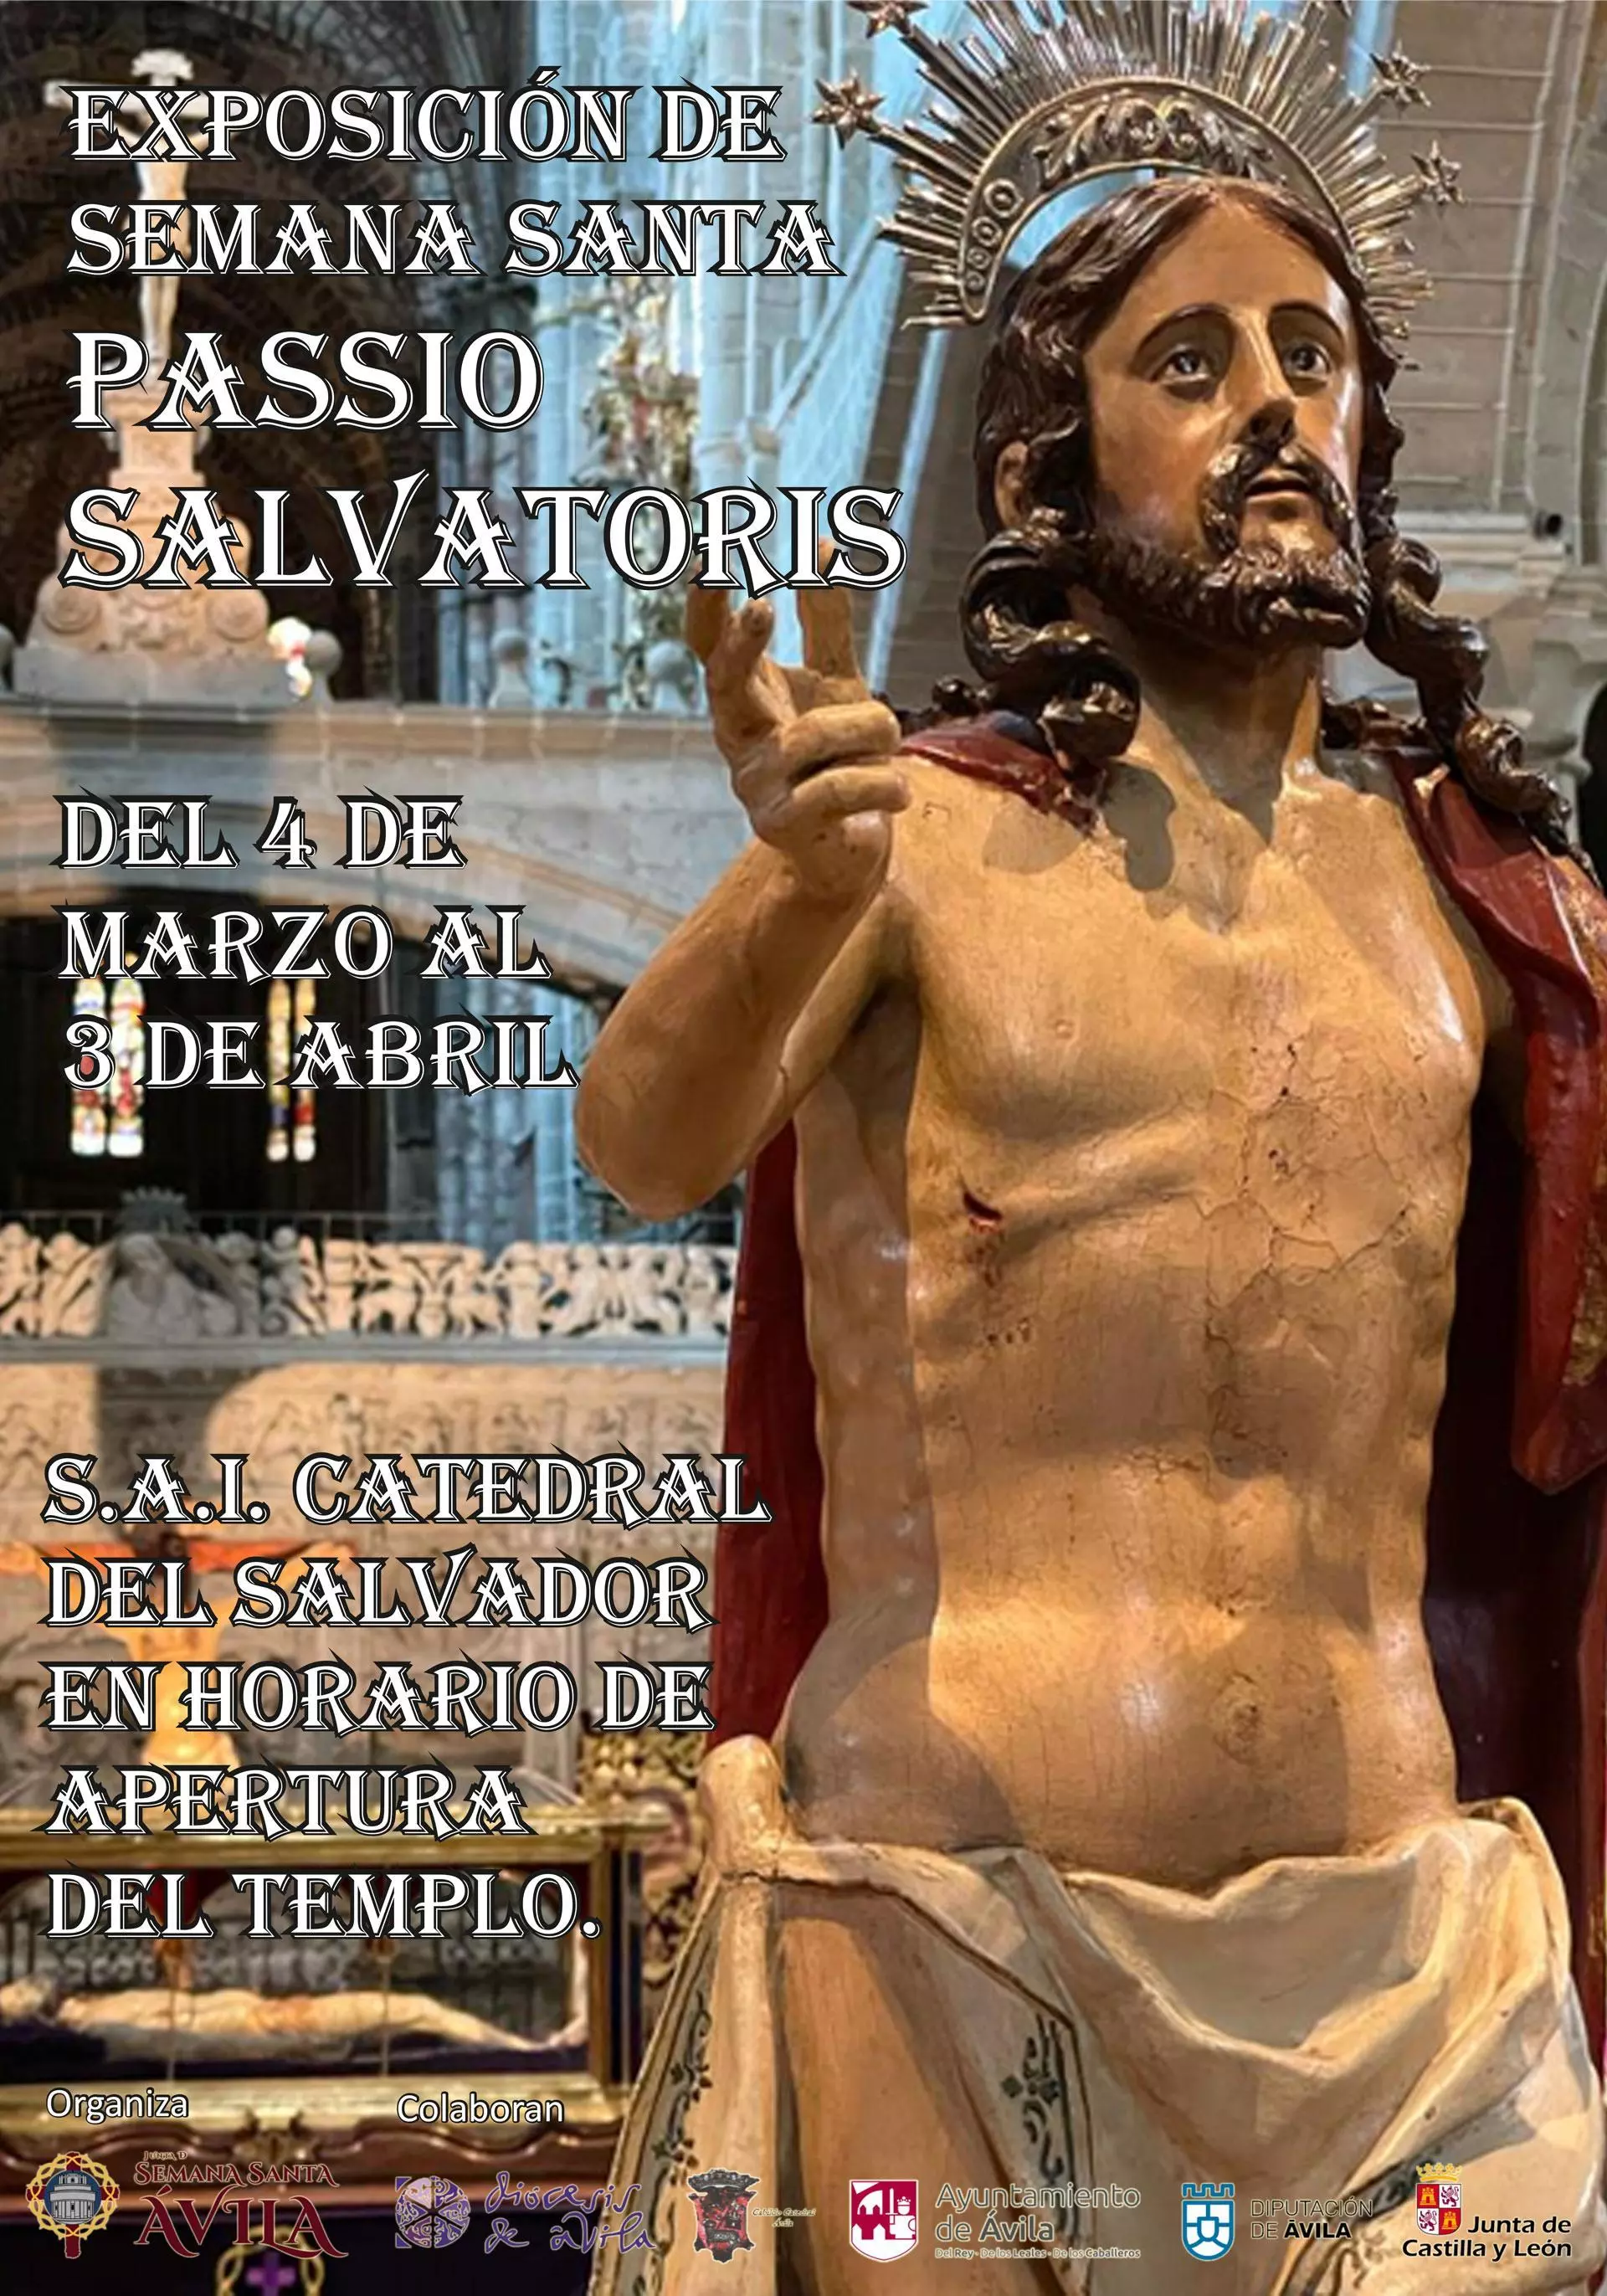 Exposición Semana Santa Passio Salvatoris